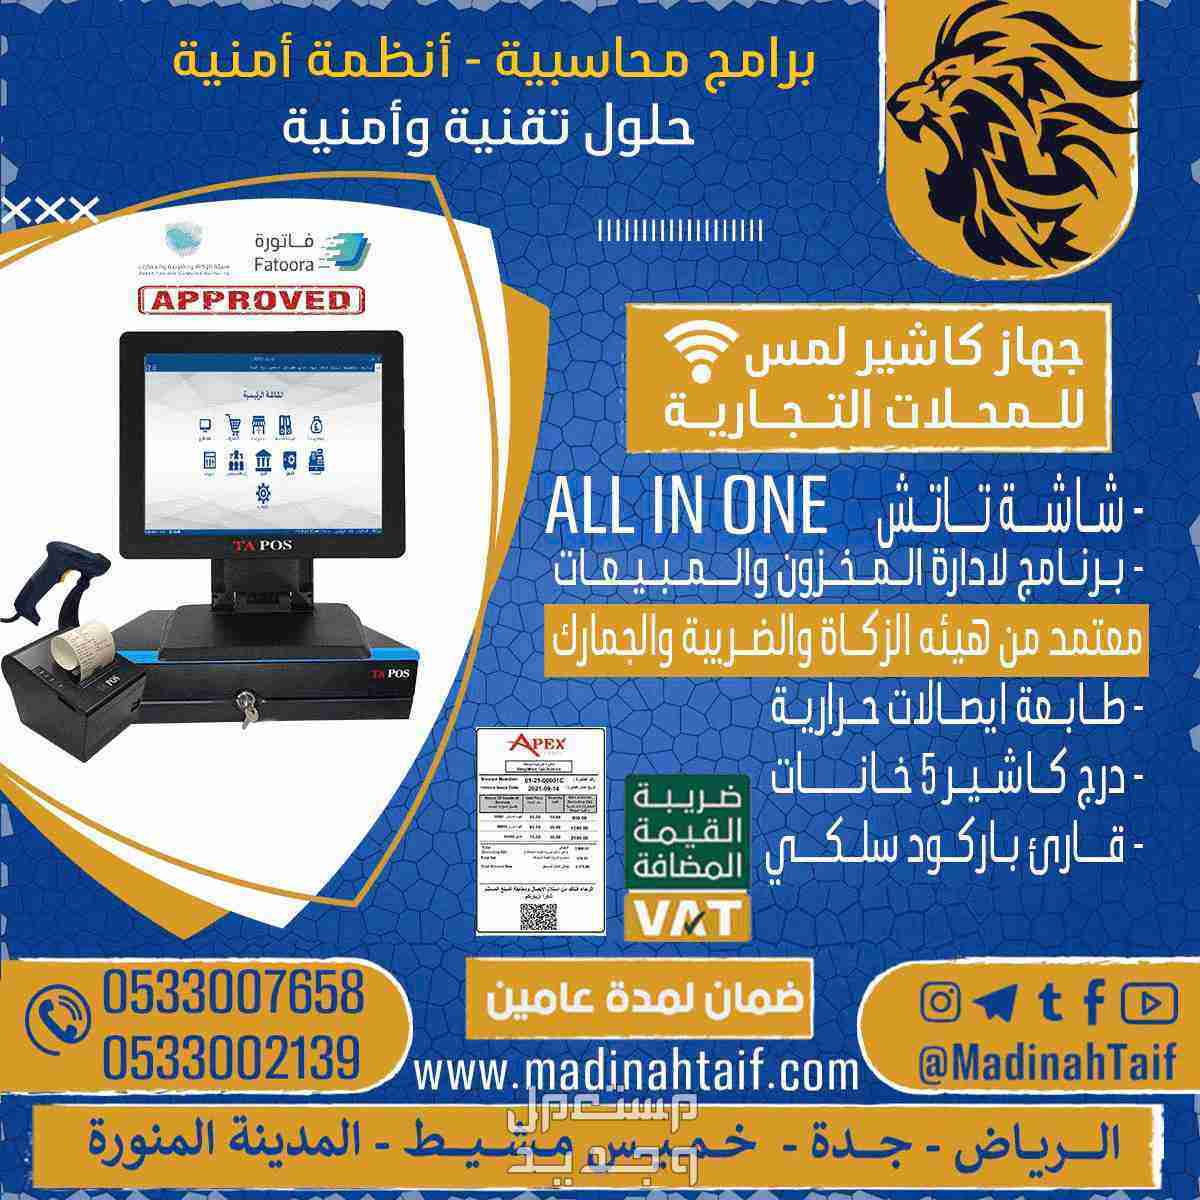 جهاز كاشير برنامج يدعم الفاتورة الالكترونيه QR للمحلات التجارية والقرطاسية